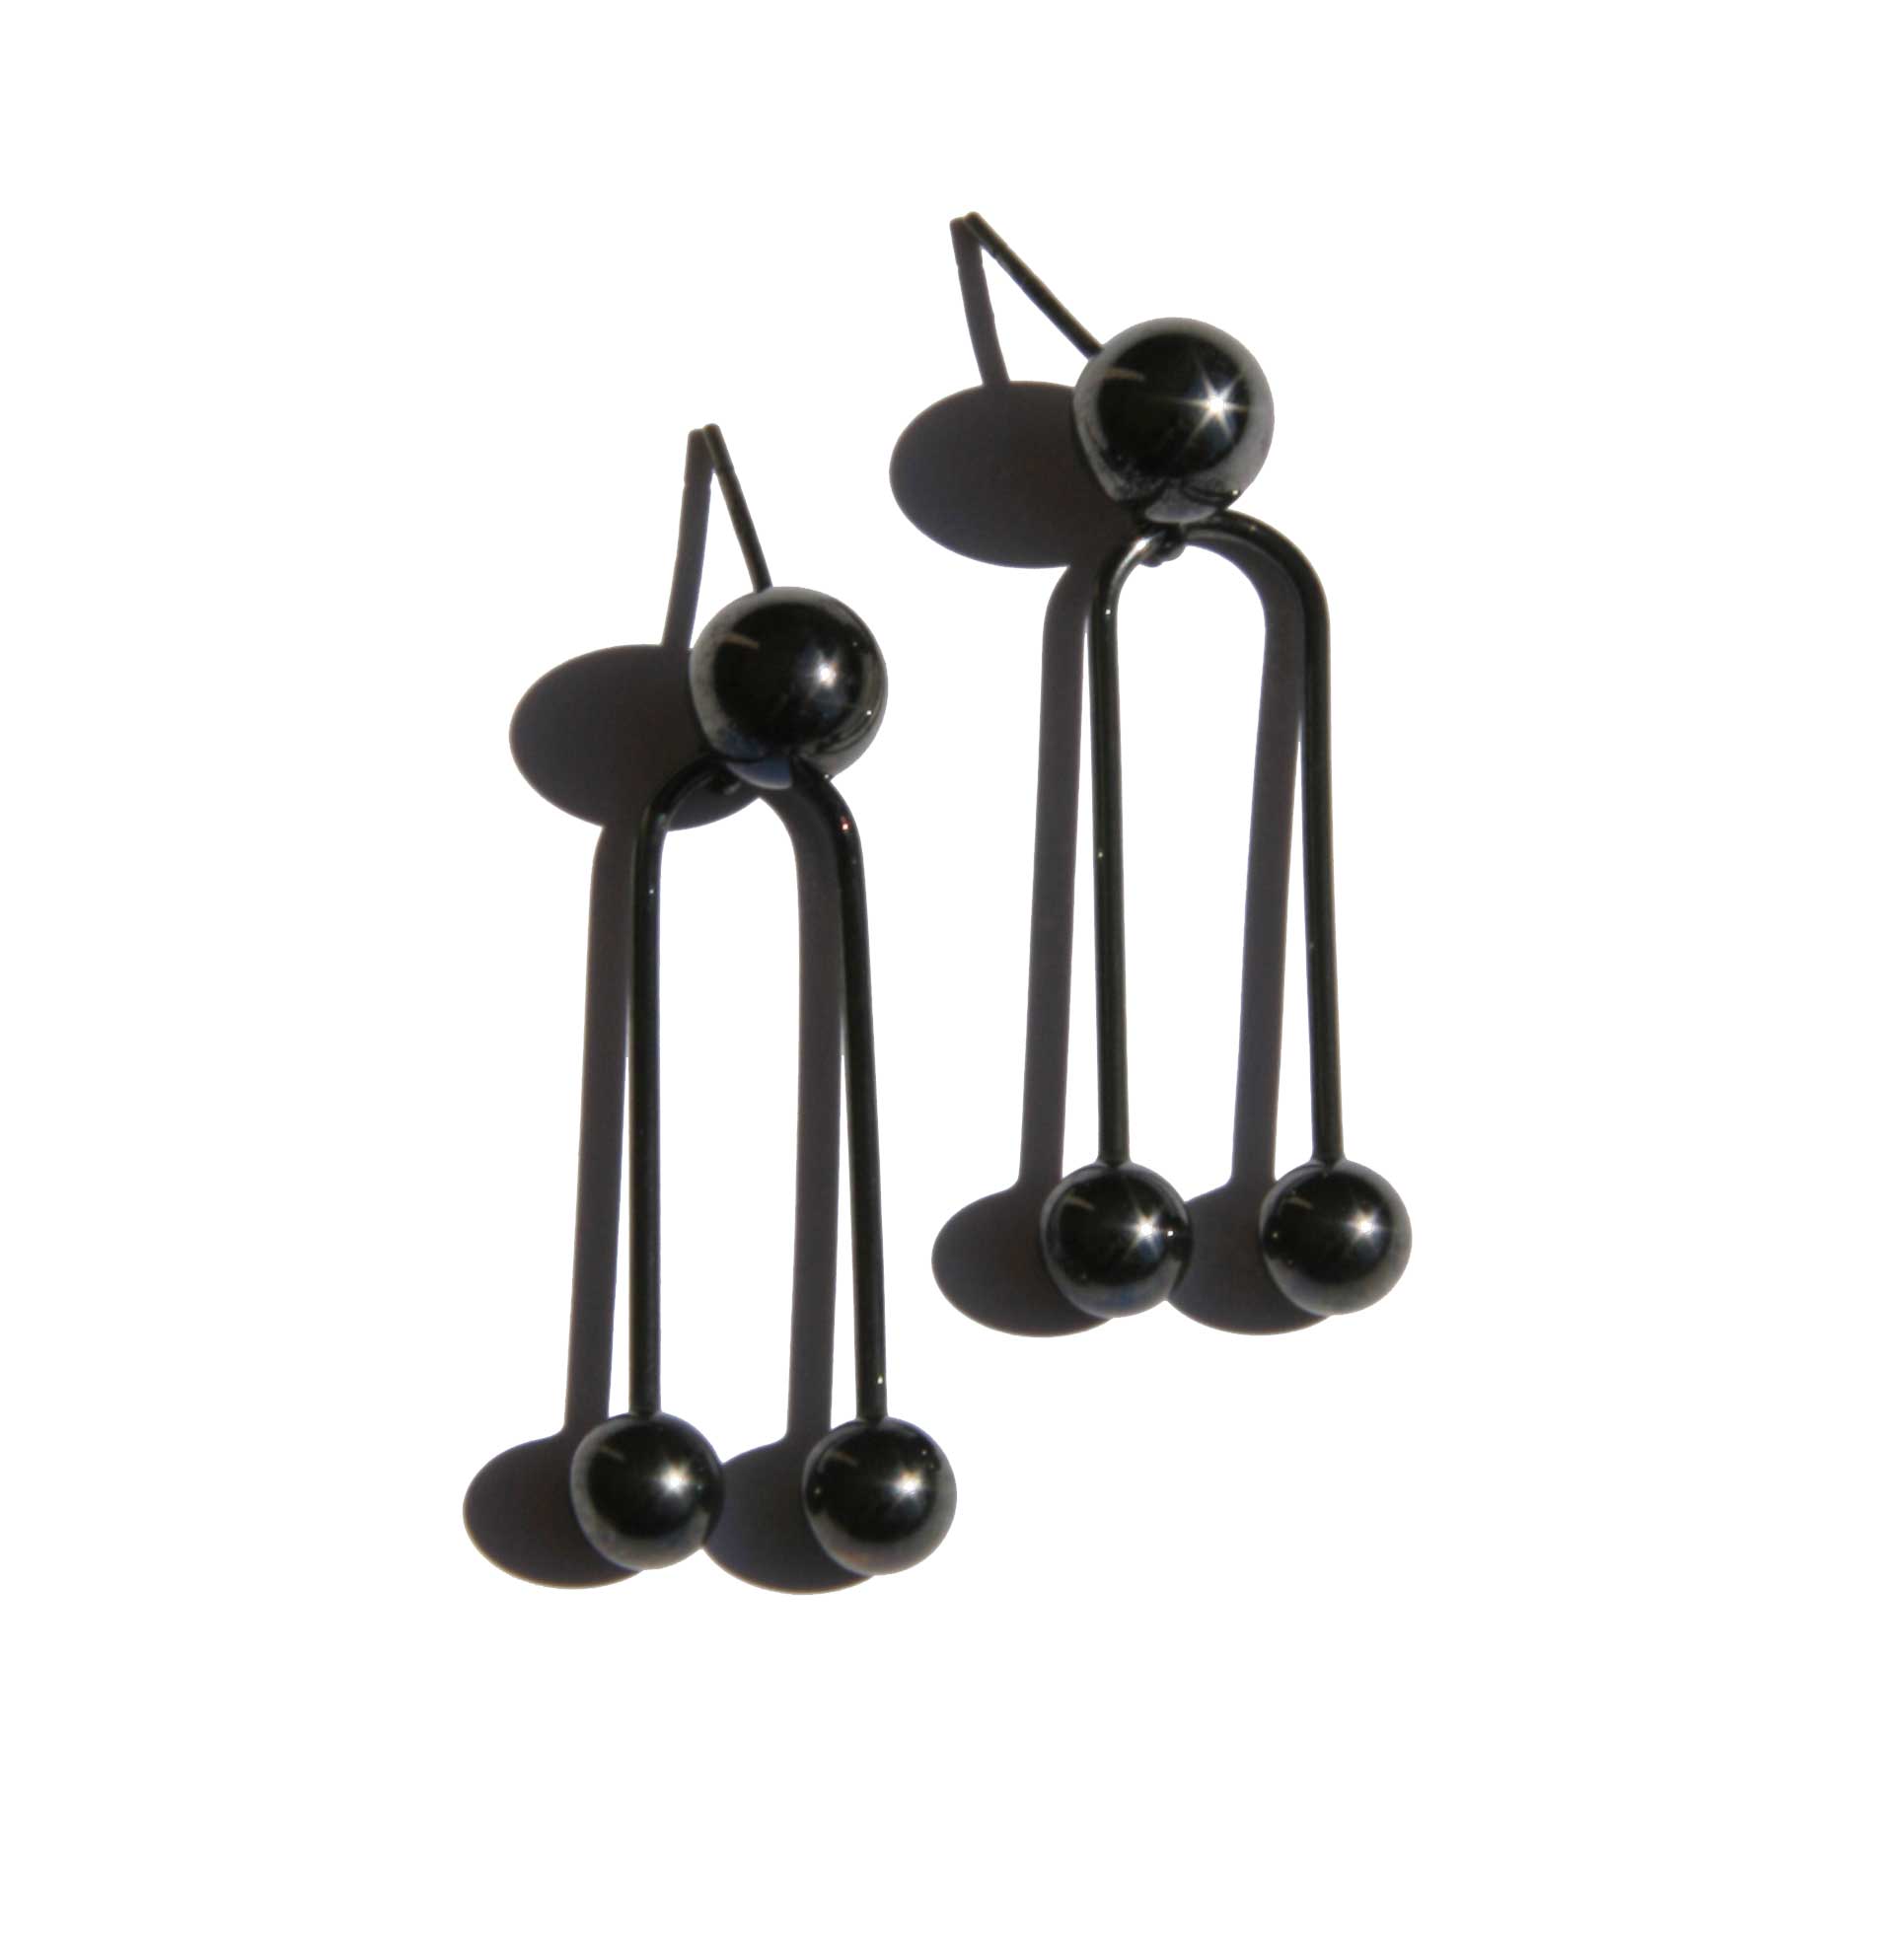 'Nipple' earrings